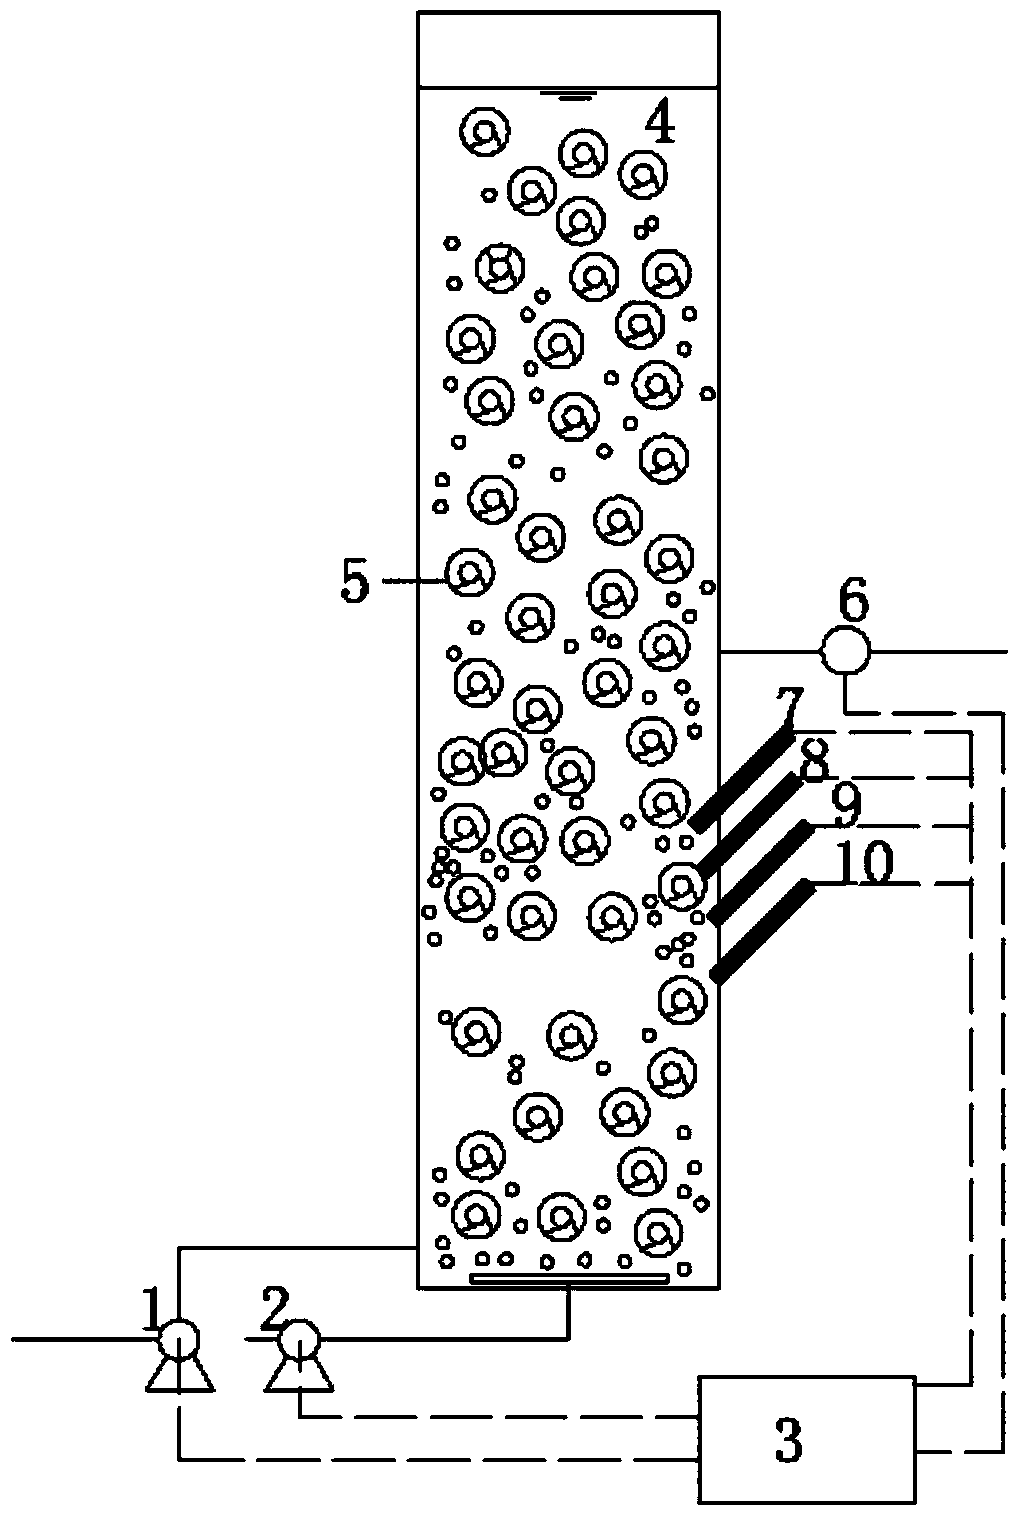 序批式反应器、在该反应器培养生物膜的方法及利用该反应器处理污水的方法